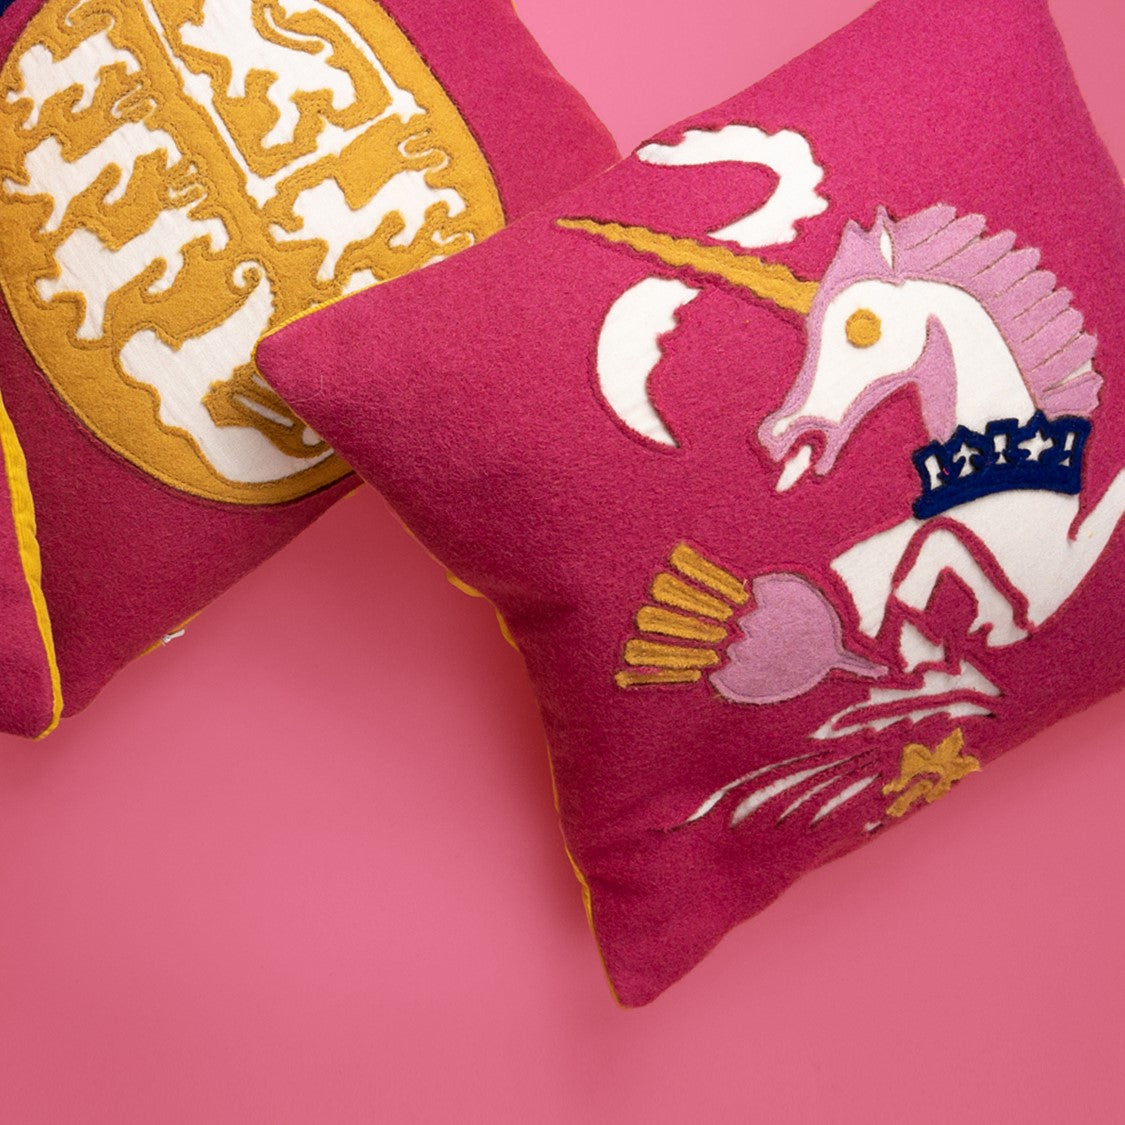 Coronation Cushion - Royal Coat of Arms -Pink